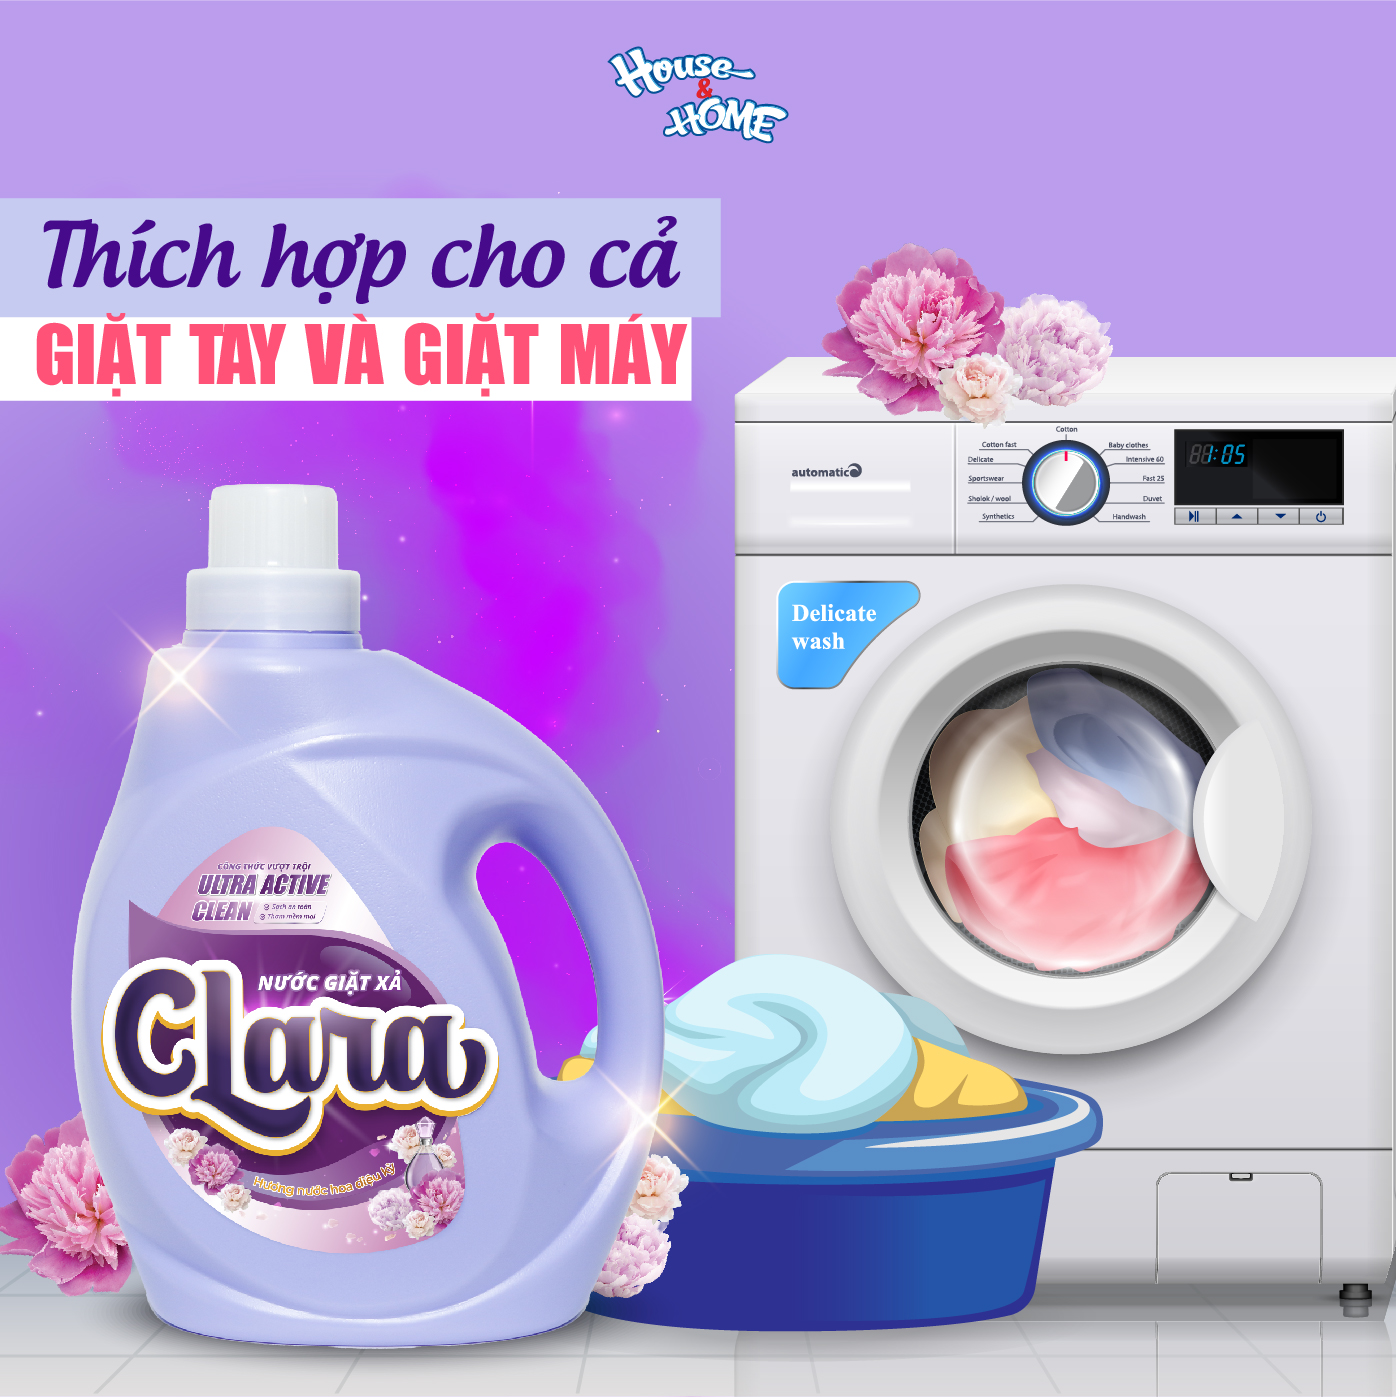 Nước giặt xả Clara hương nước hoa can 2,6kg